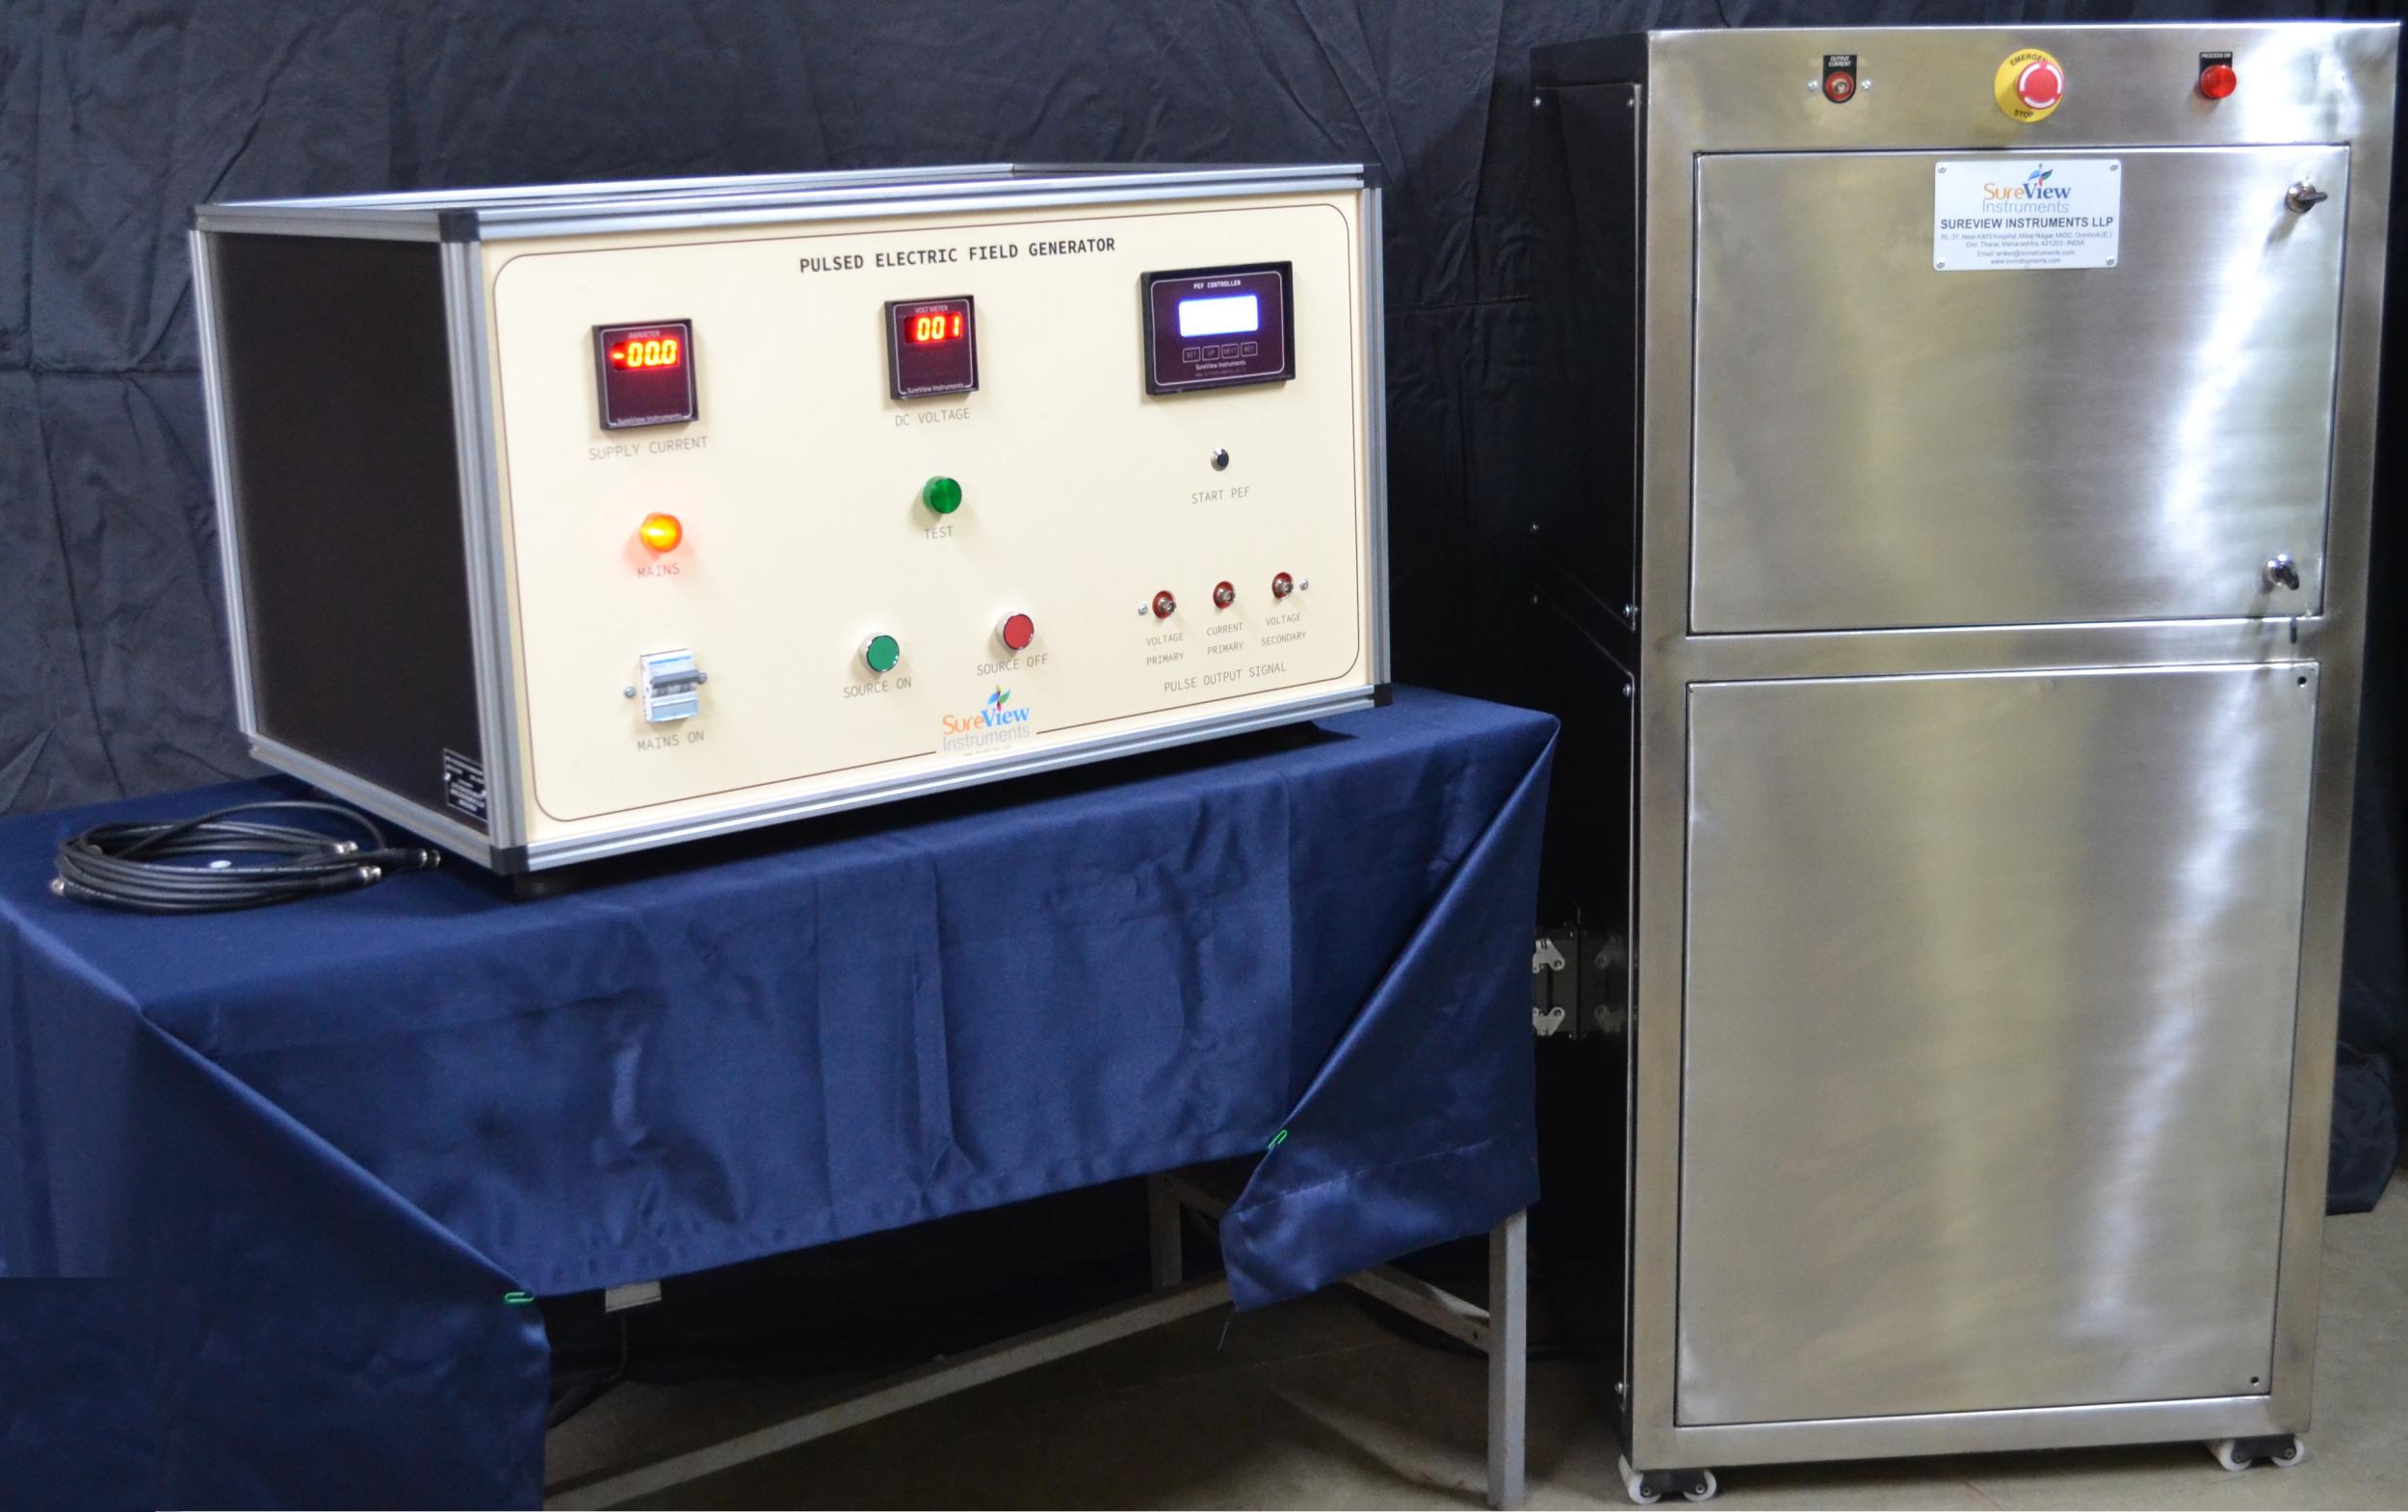 Lab scale PEF generators